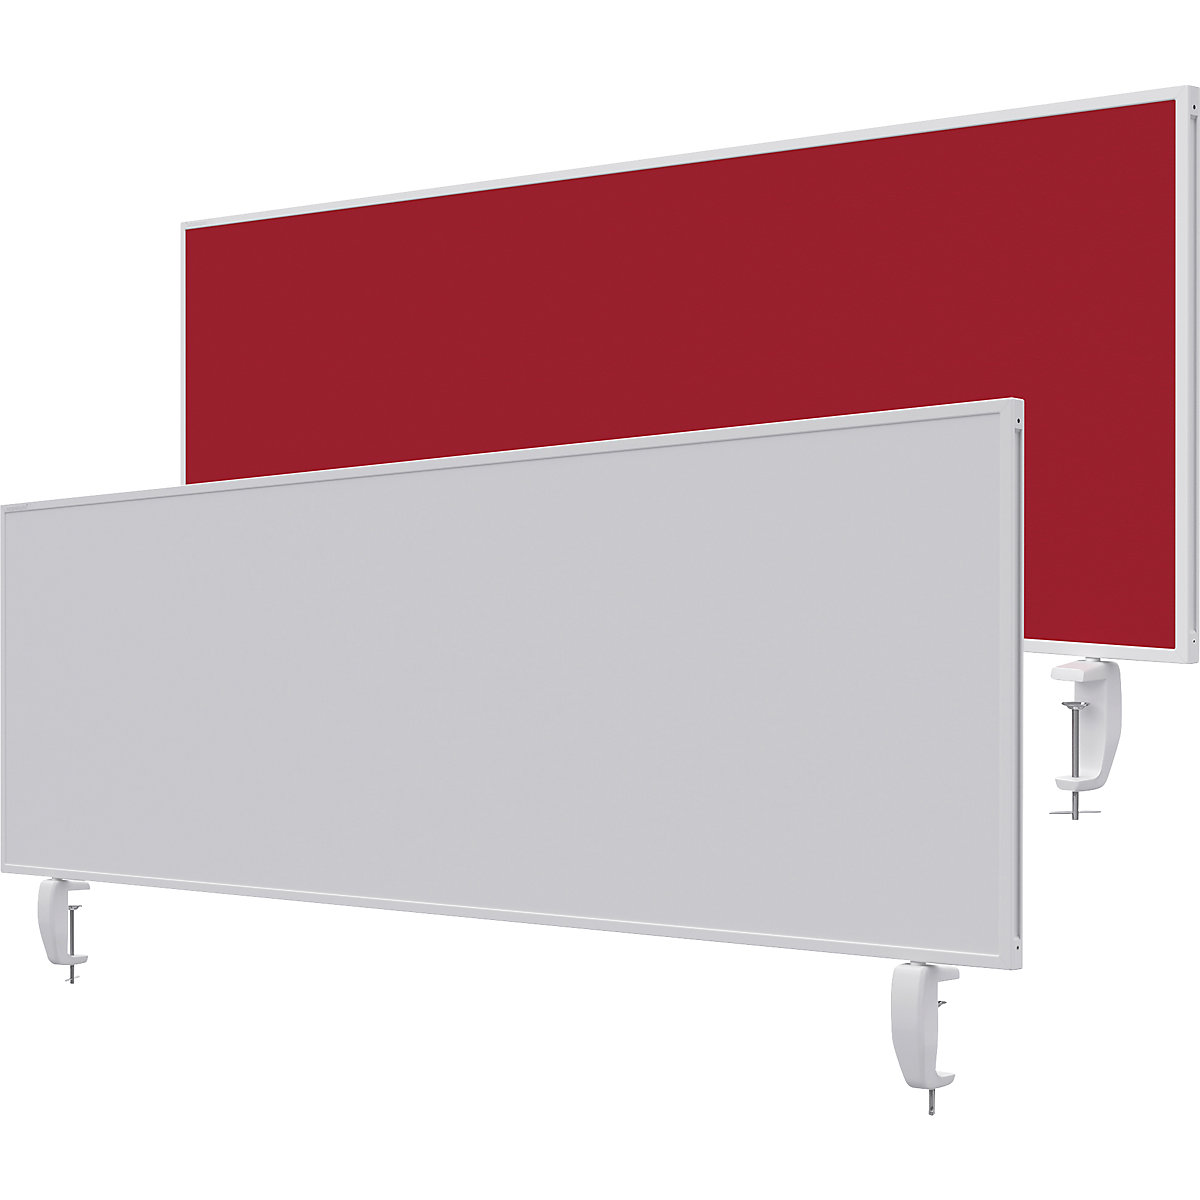 Namizna predelna stena VarioPin – magnetoplan, bela tabla/klobučevina, širina 1600 mm, rdeče barve